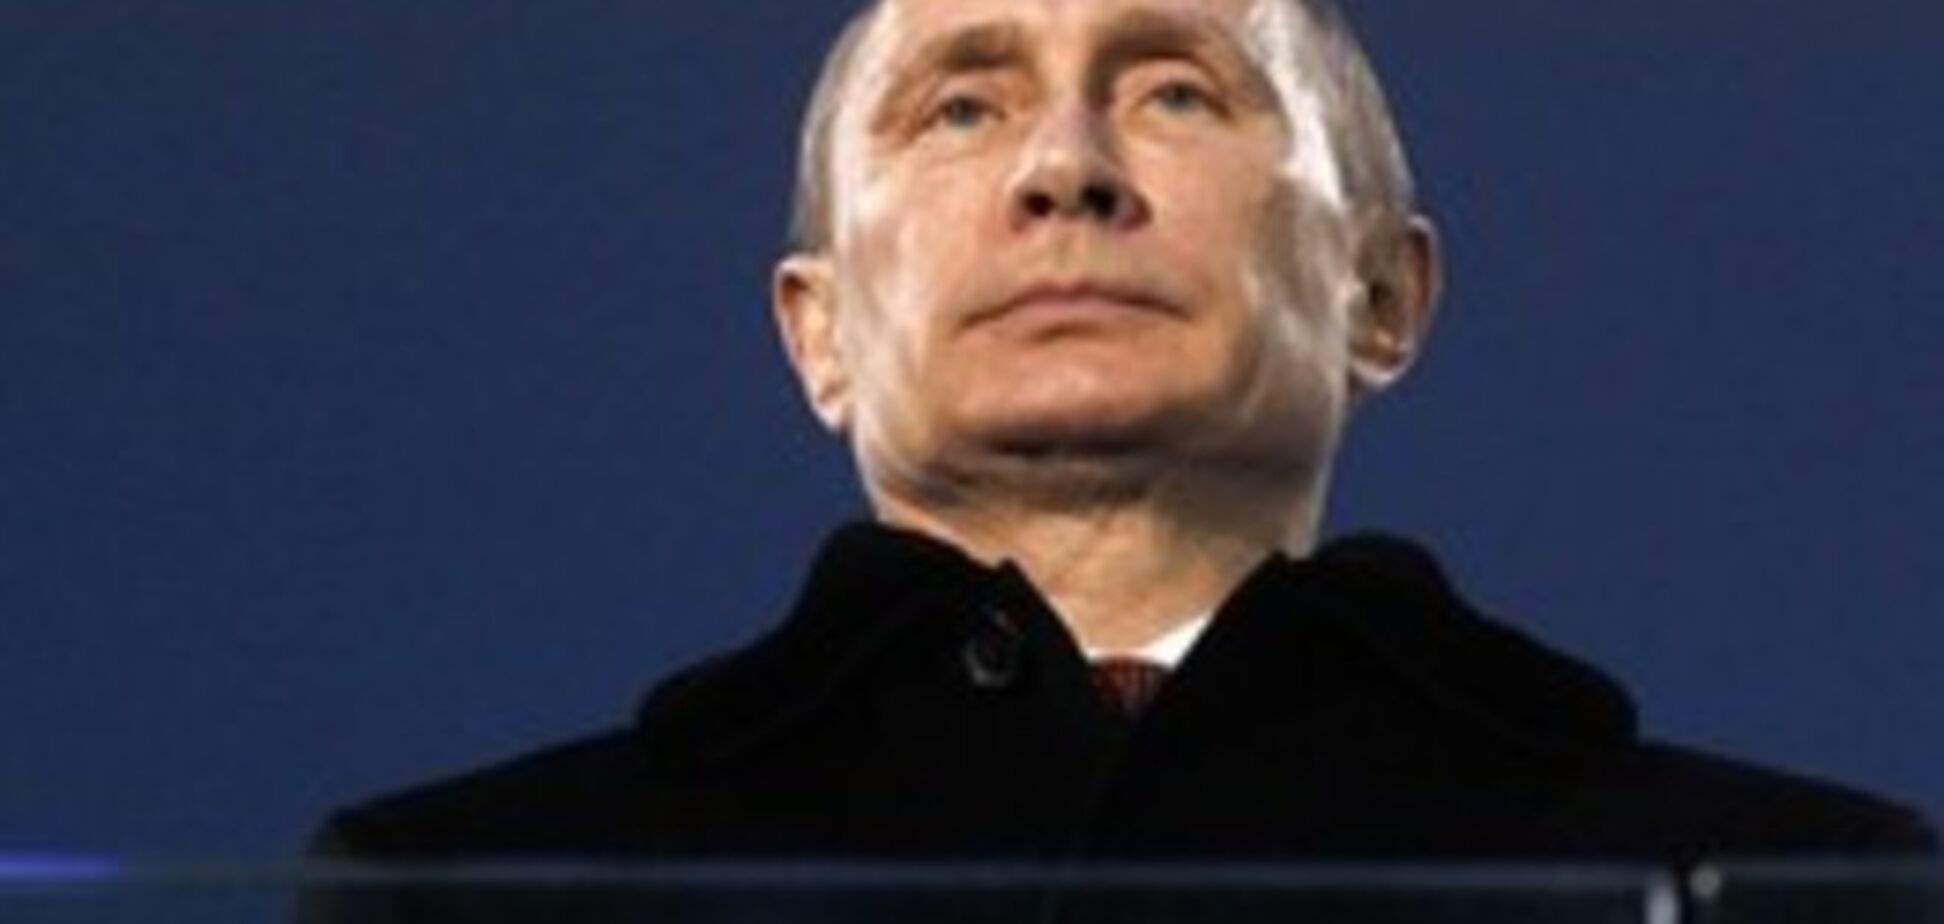 Захоплення нових територій - єдиний спосіб для Путіна утримати владу - експерт